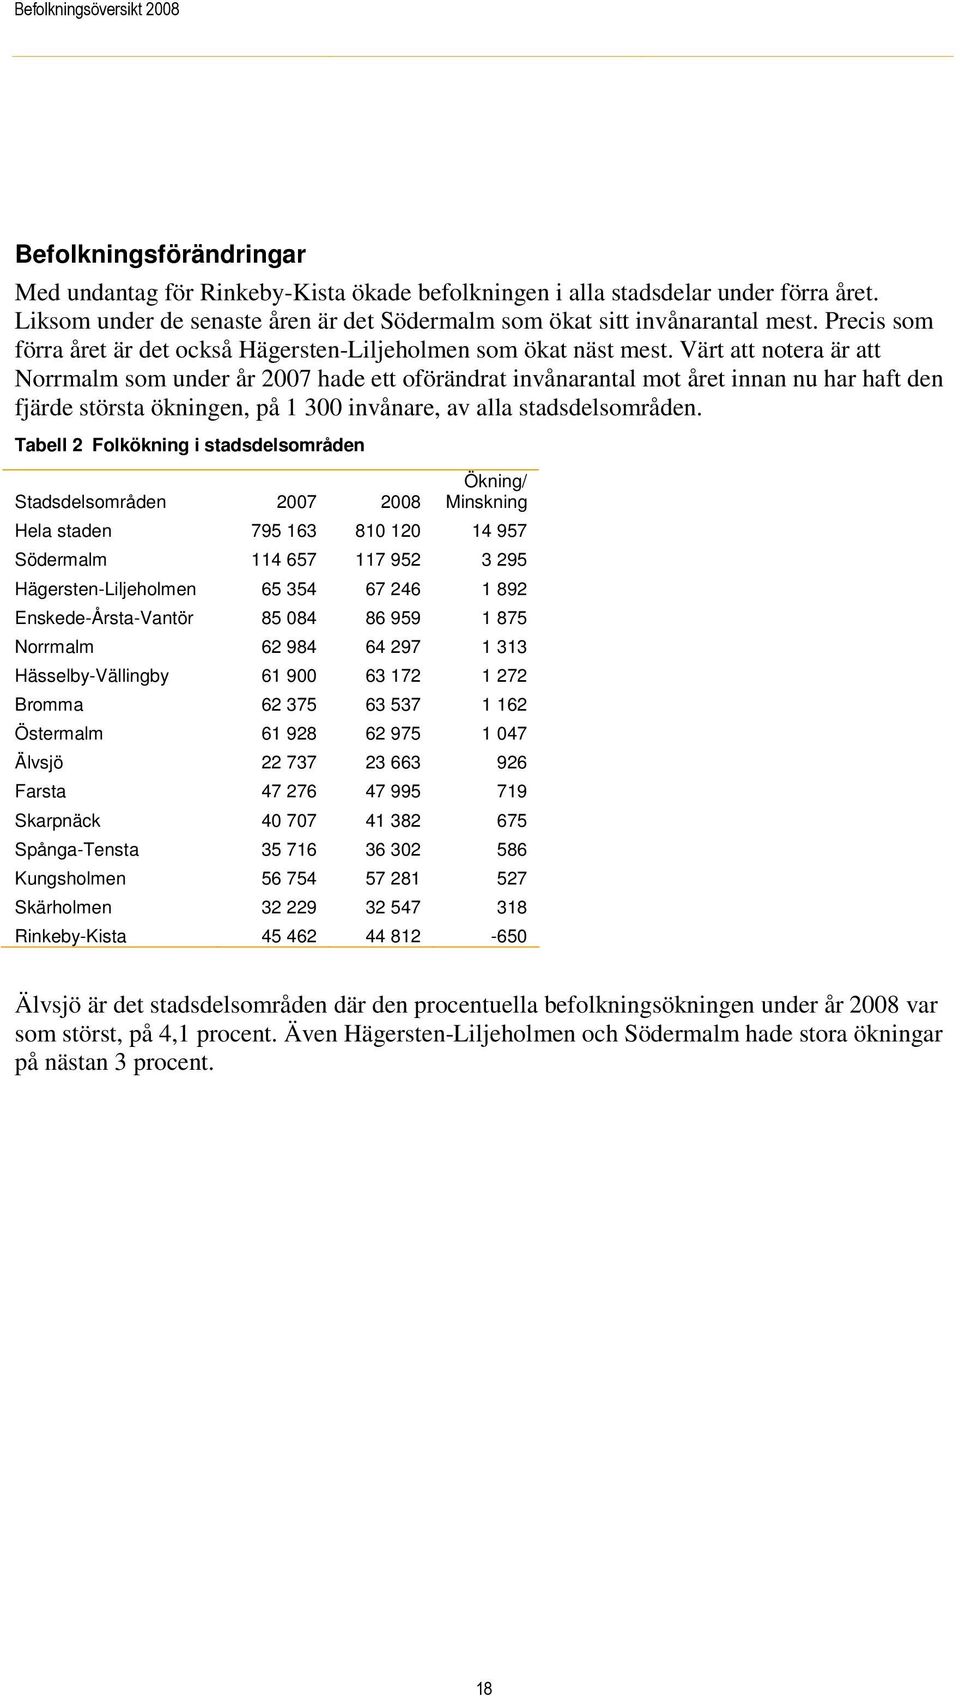 Värt att notera är att Norrmalm som under år 2007 hade ett oförändrat invånarantal mot året innan nu har haft den fjärde största ökningen, på 1 300 invånare, av alla stadsdelsområden.